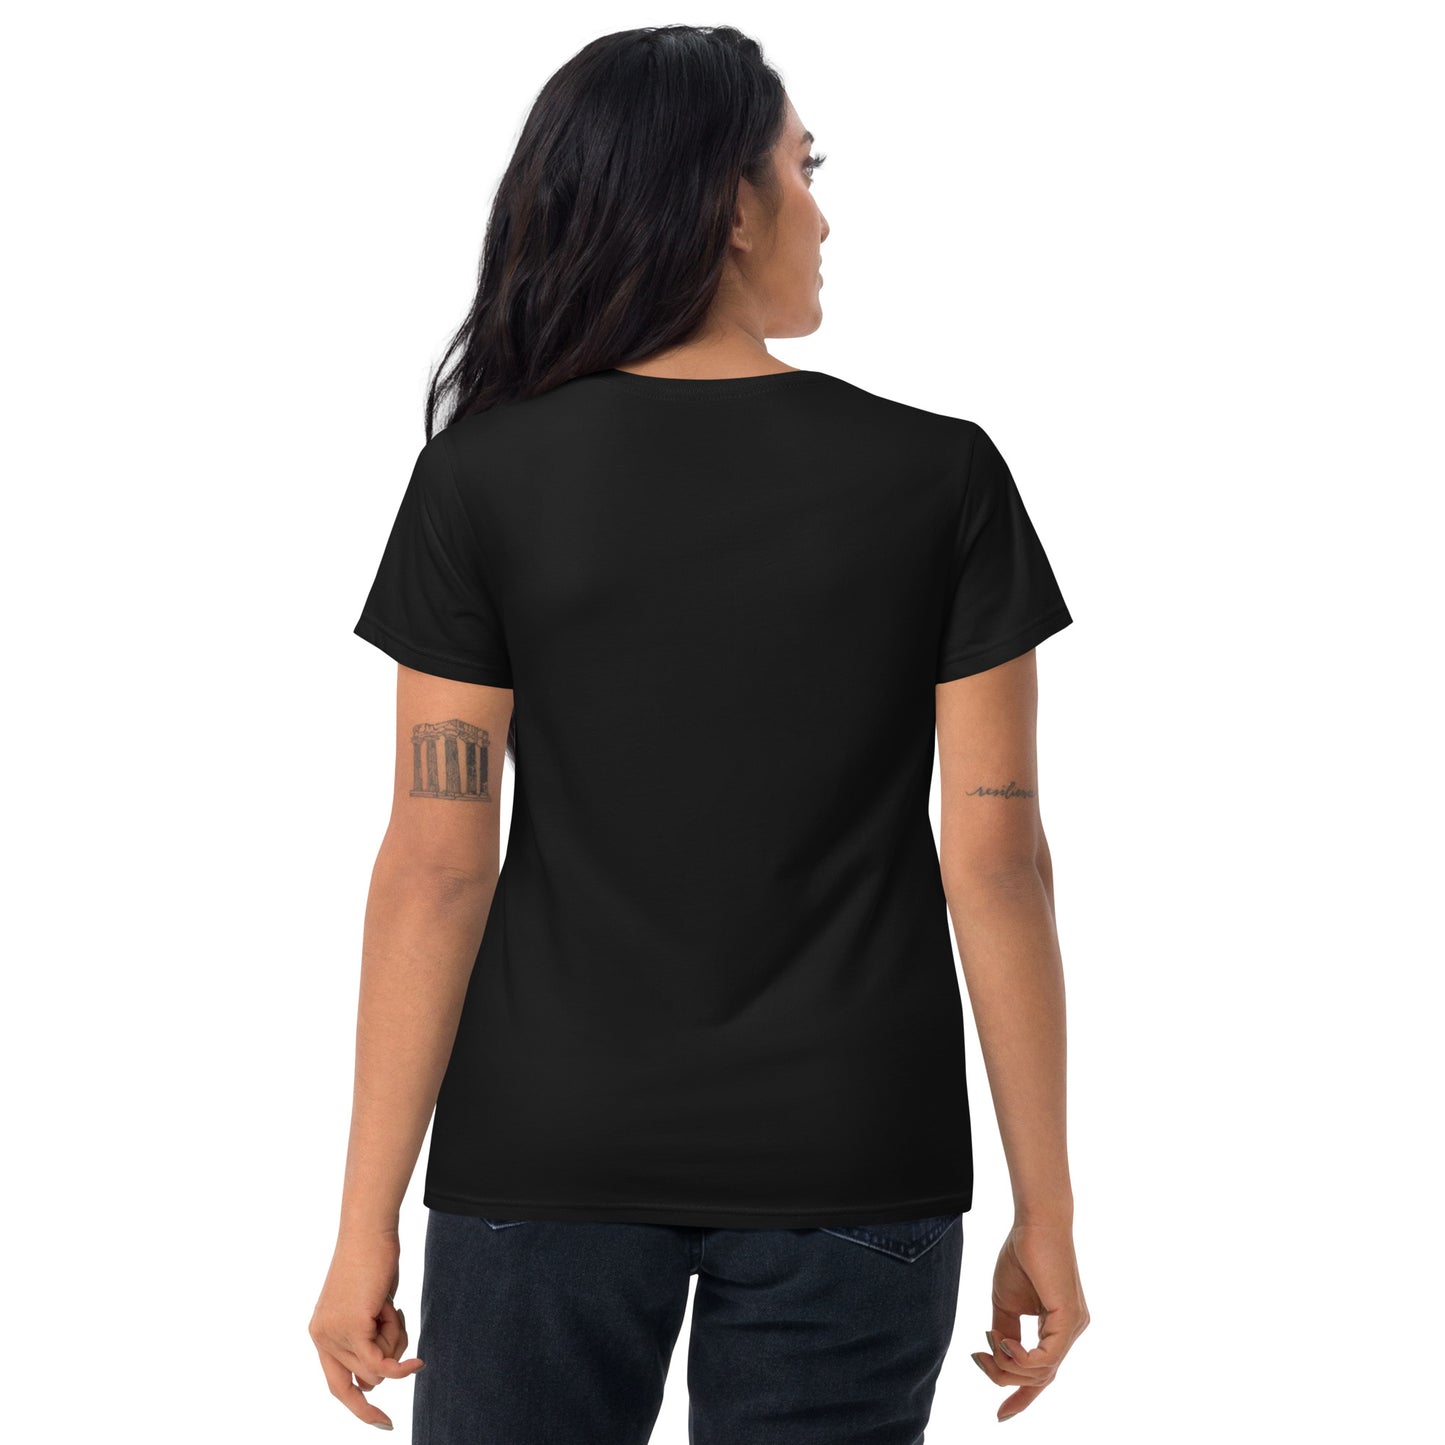 Le monde m'énerve - Women's T-shirt